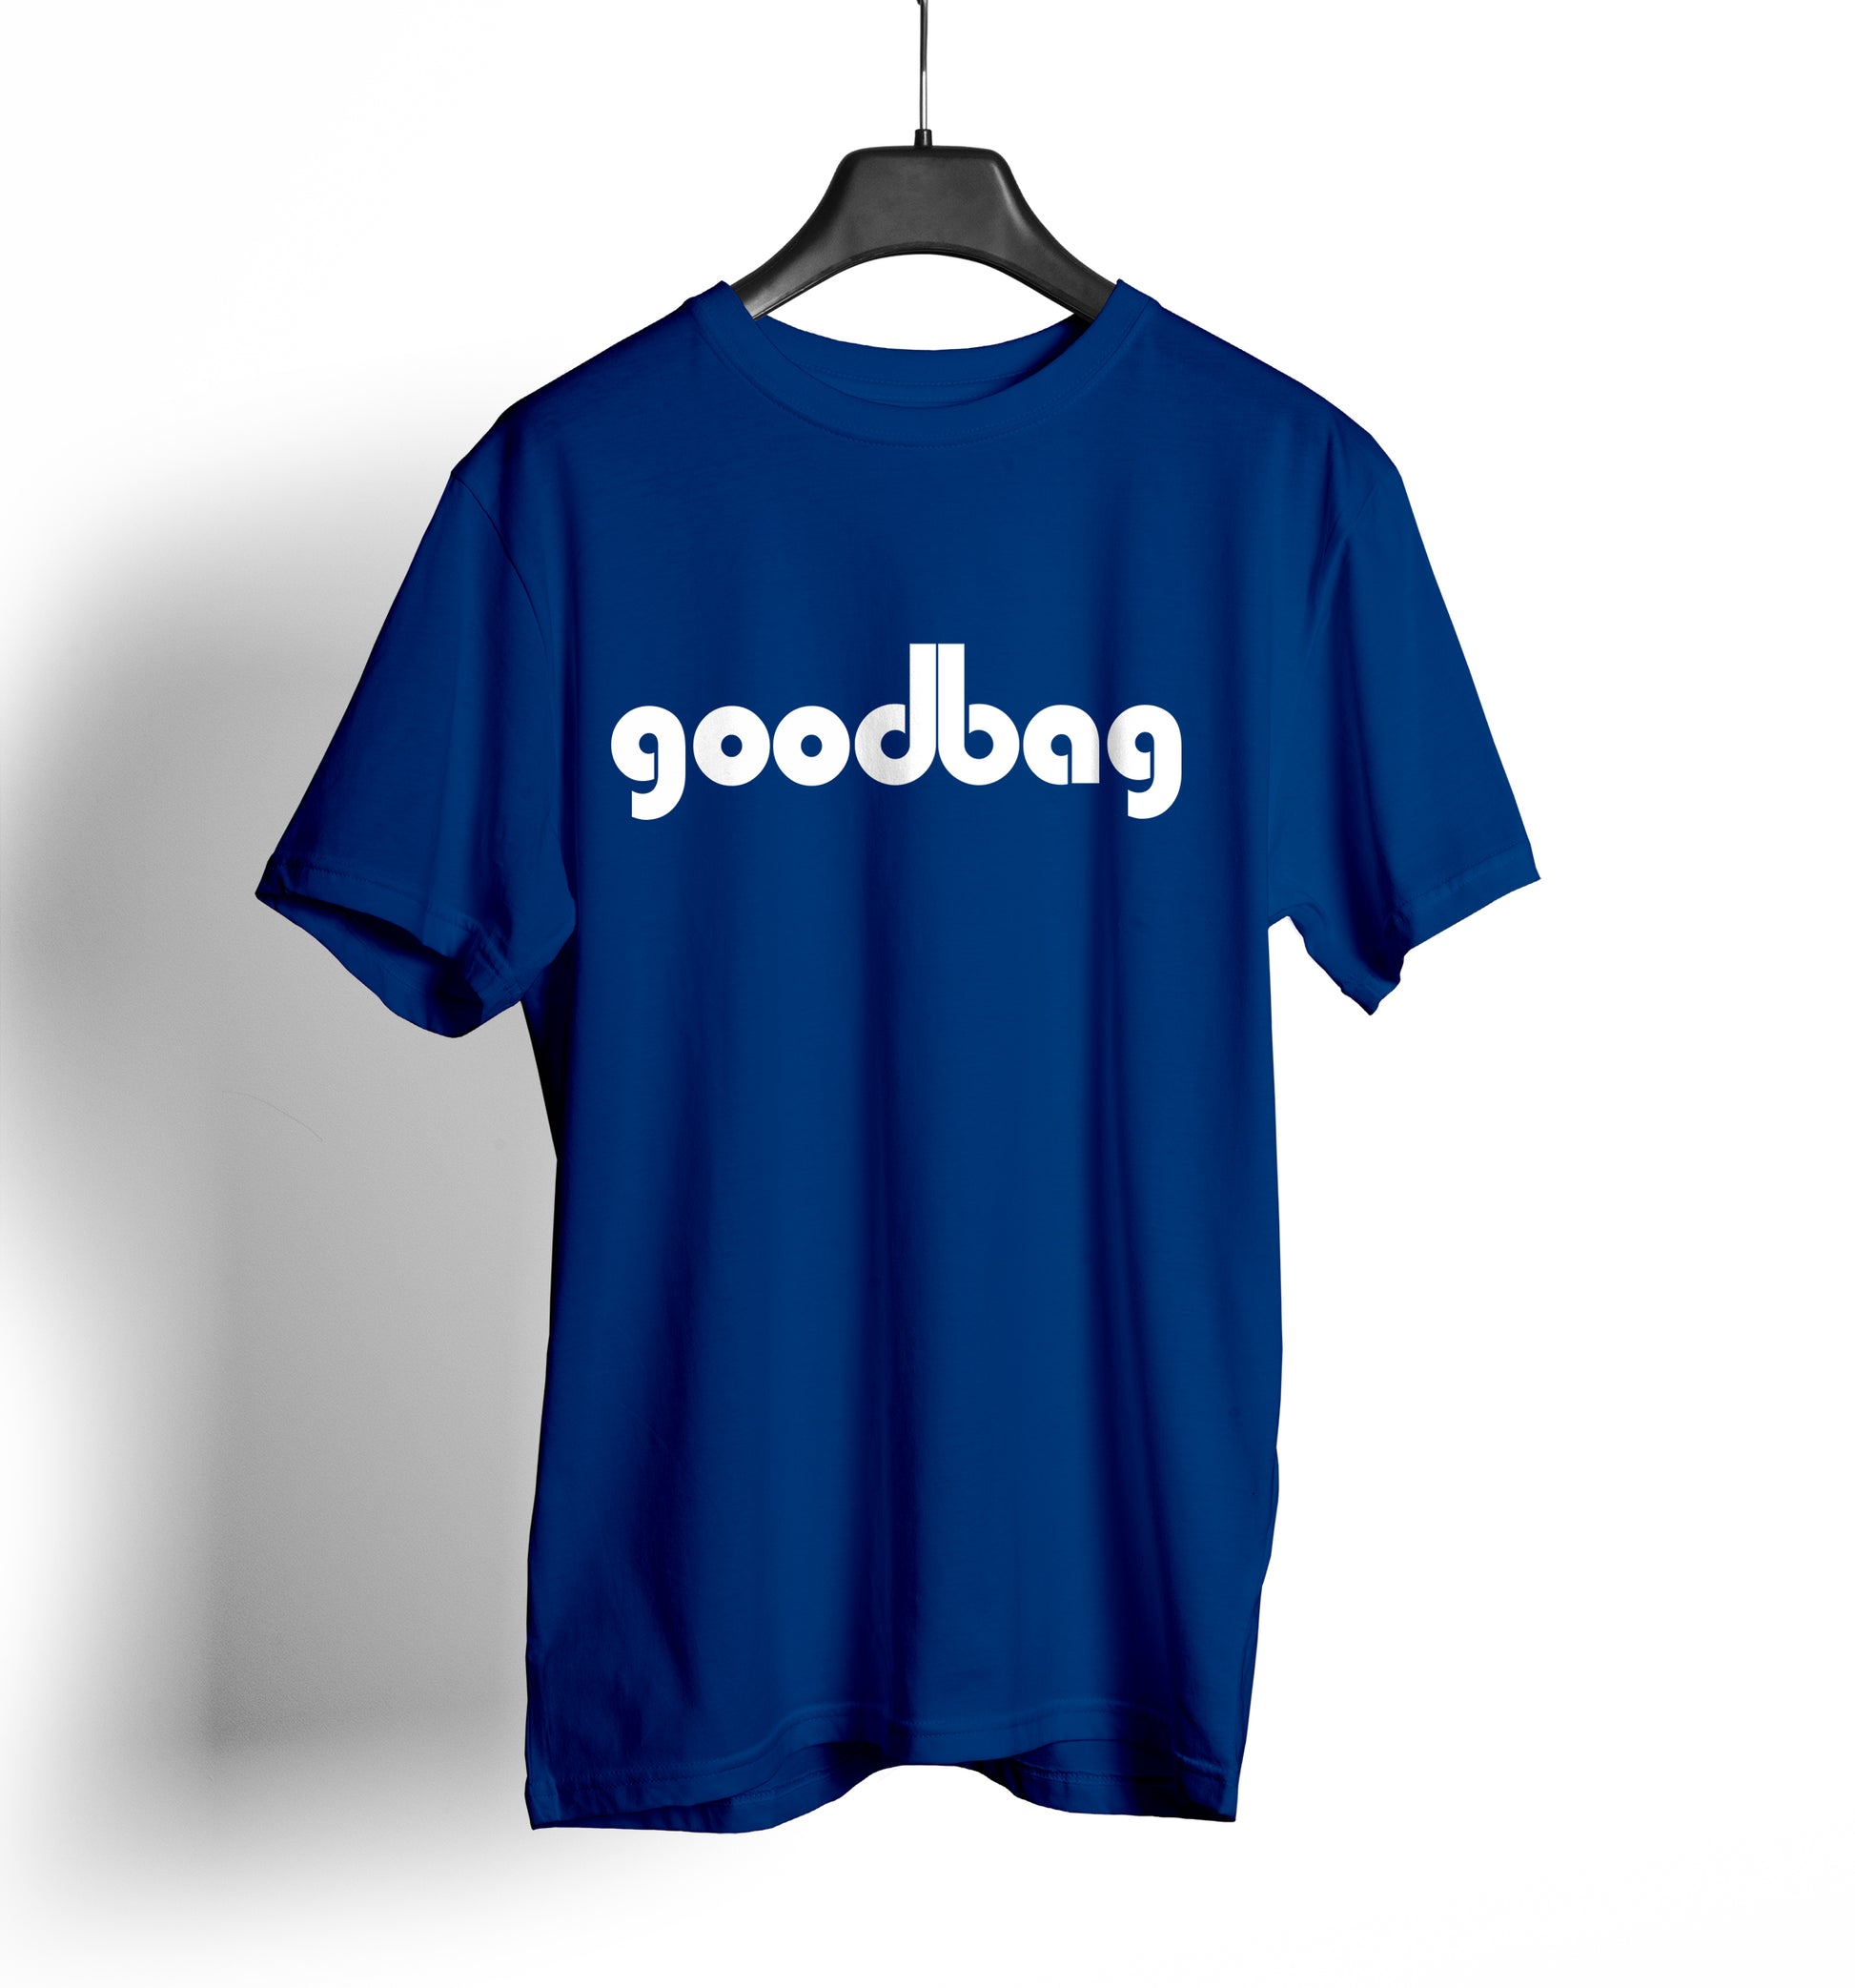 cornhole shirt - goodbag db shirt